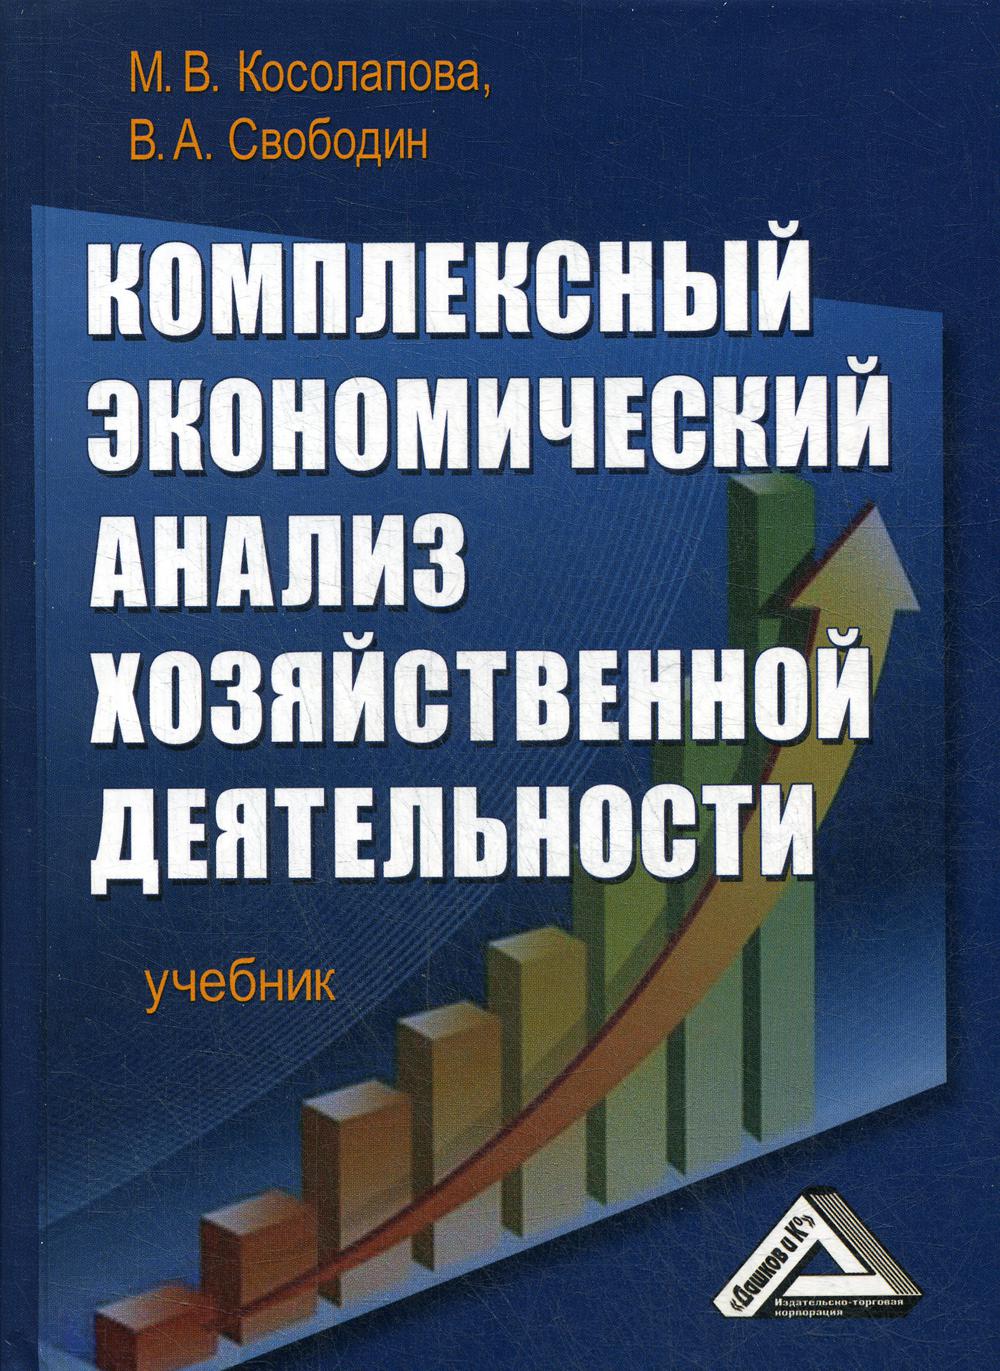 Комплексный экономический анализ хозяйственной деятельности: Учебник. 3-е изд., стер.